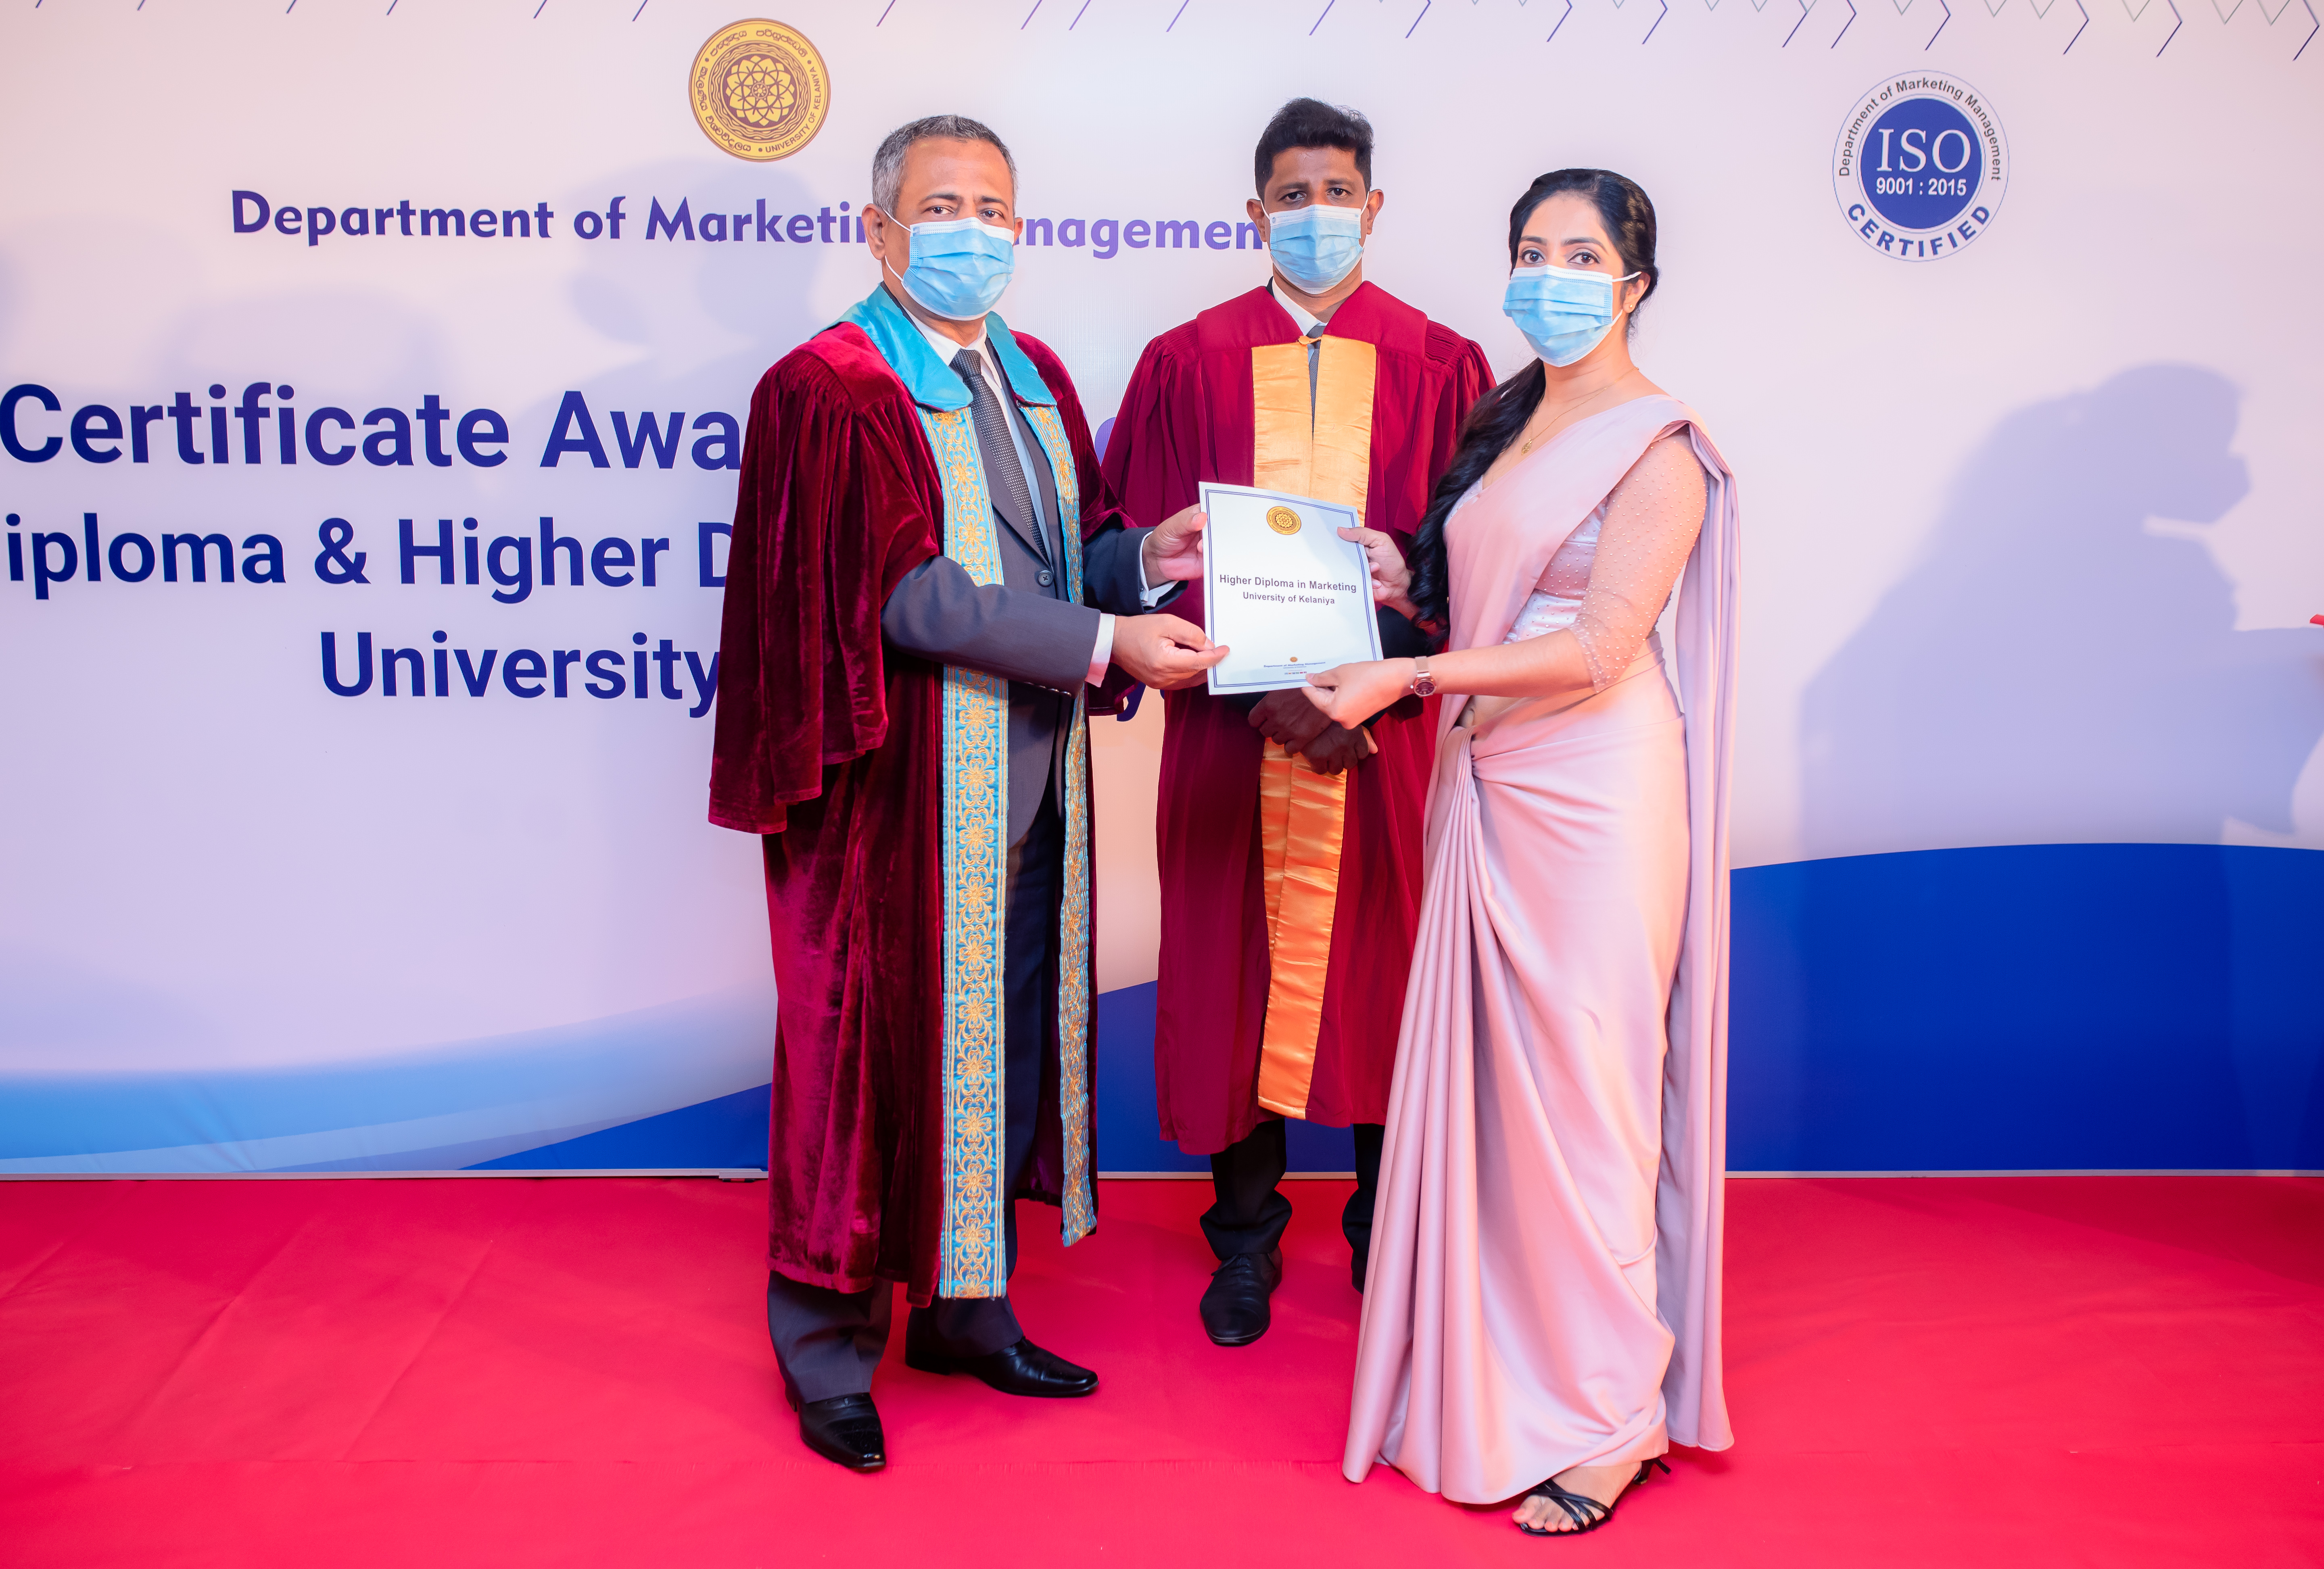 Certificate Awarding Ceremony of Diploma in Marketing and Higher Diploma in Marketing